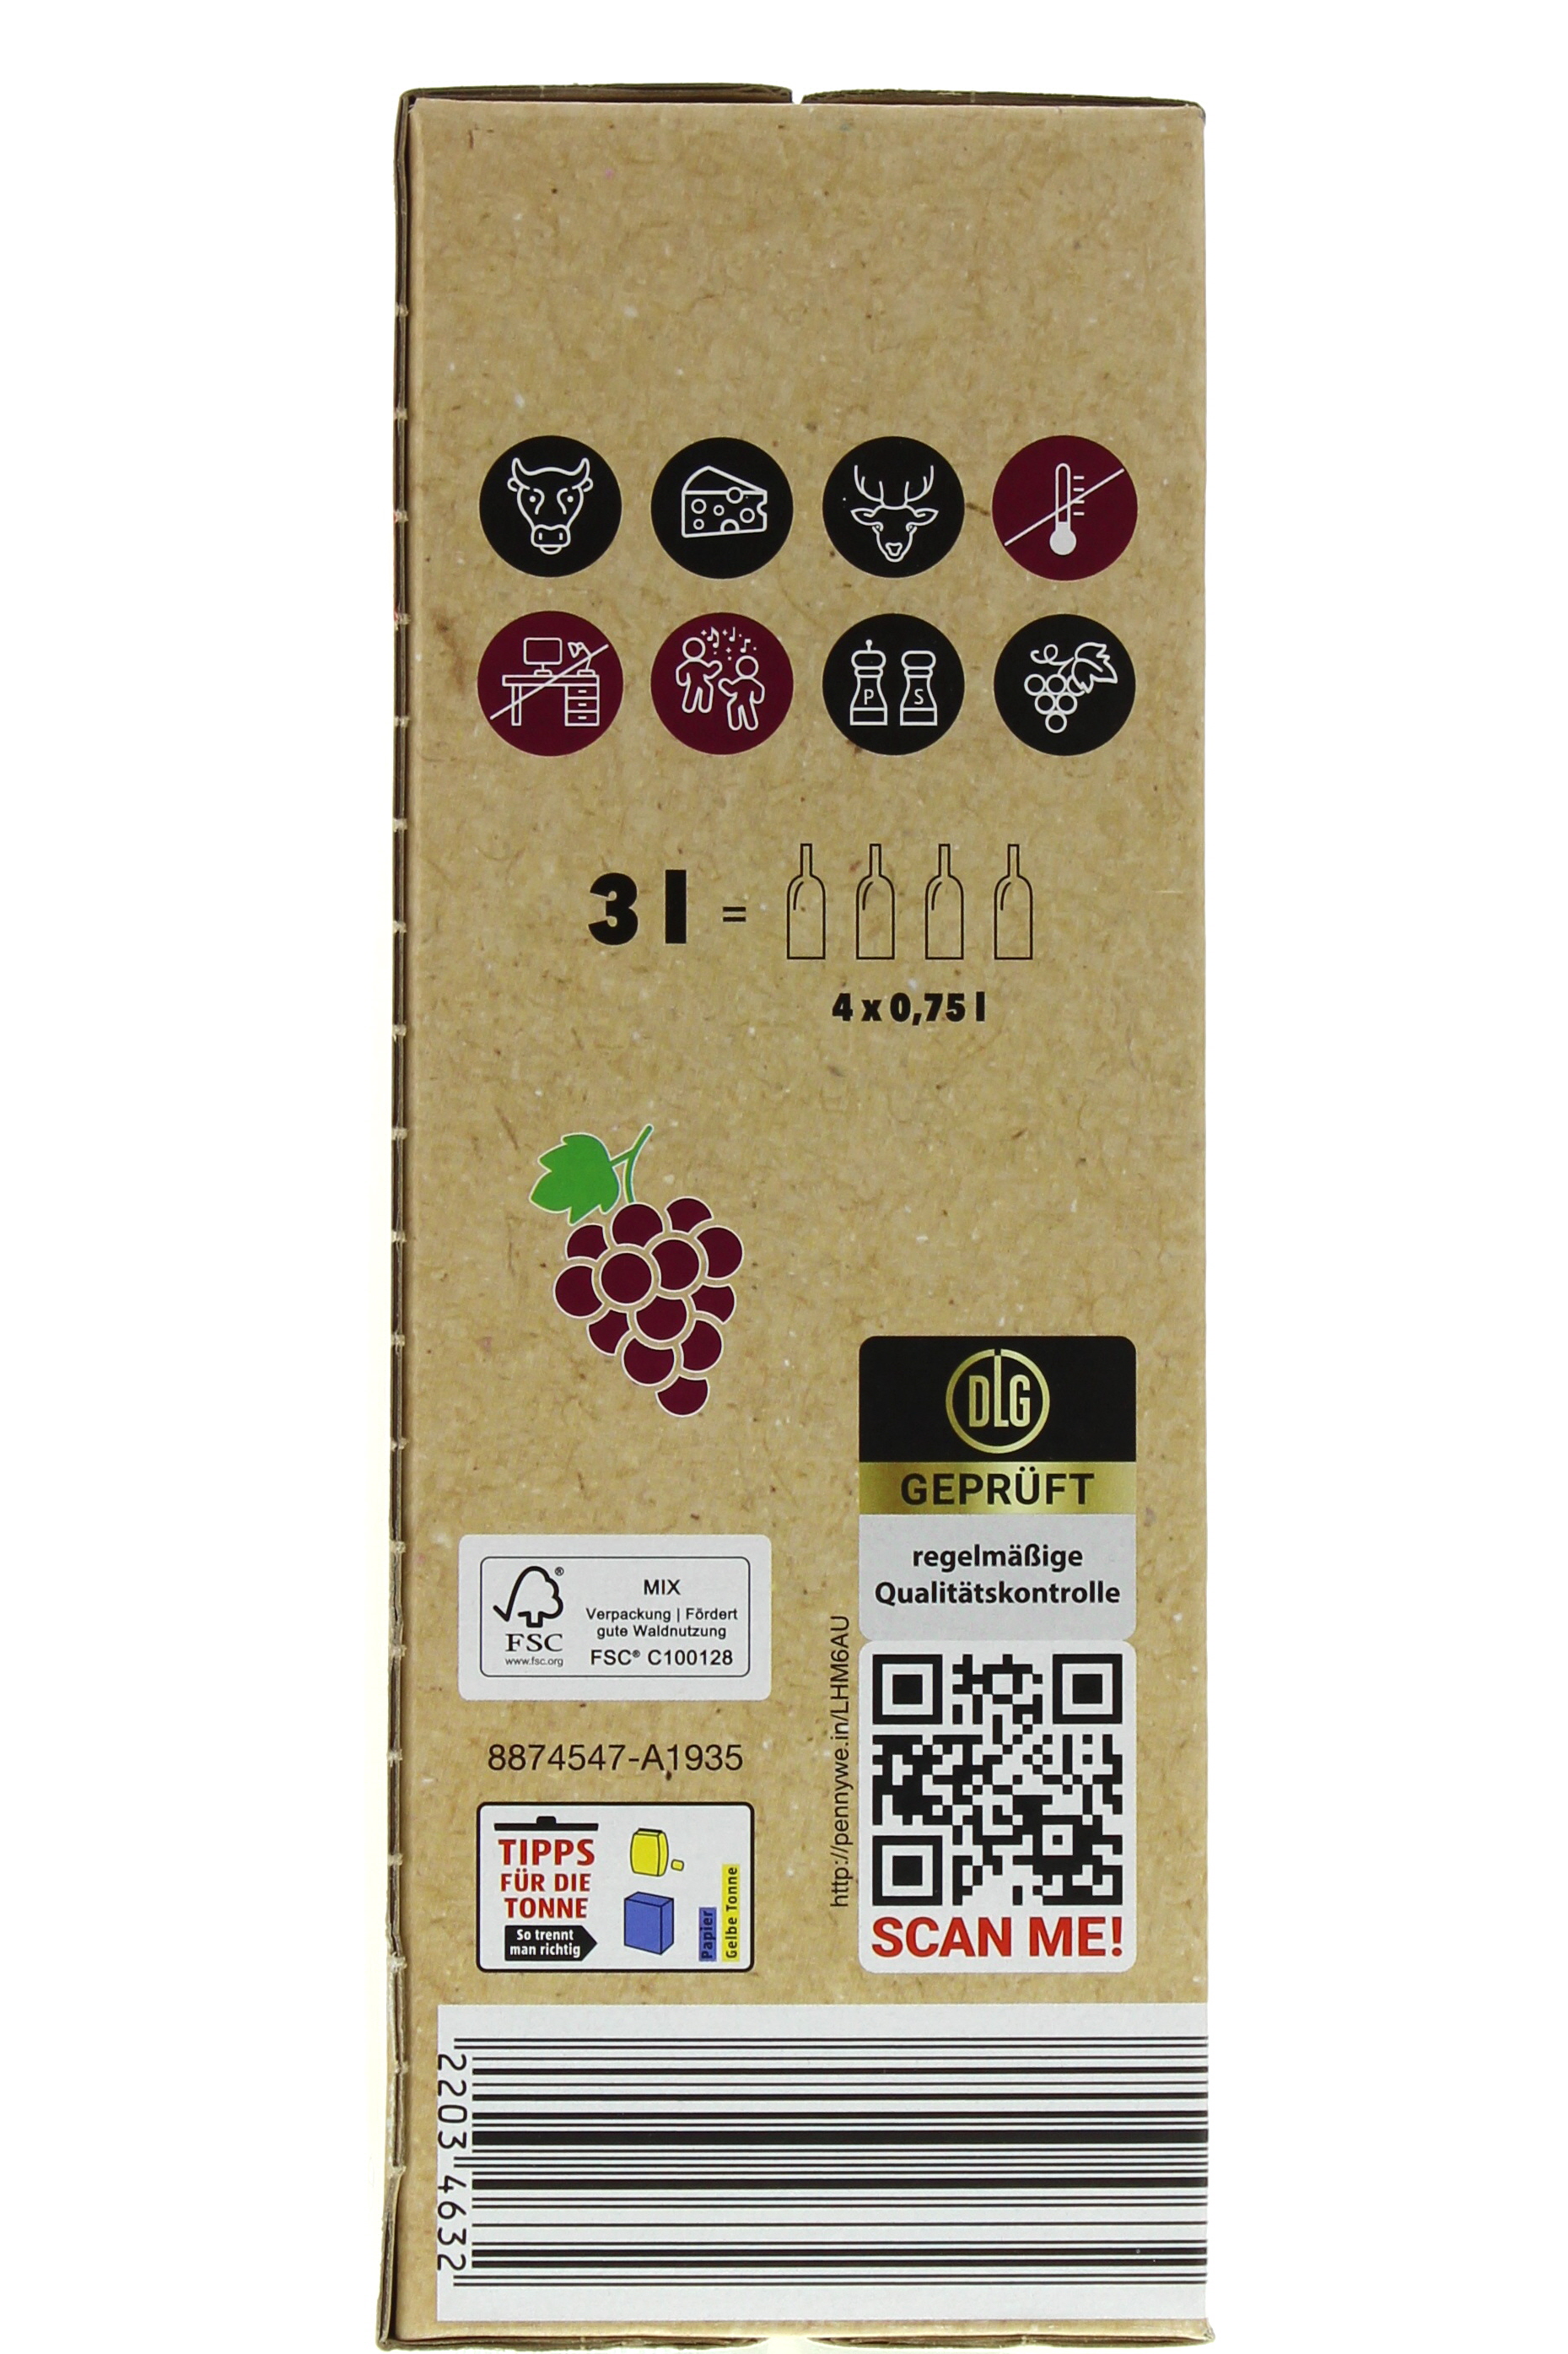 2022 Spanien Tempranillo Wein-App Vino - Syrah trocken l 3,0 España Mobile Bag-in-Box de PENNY